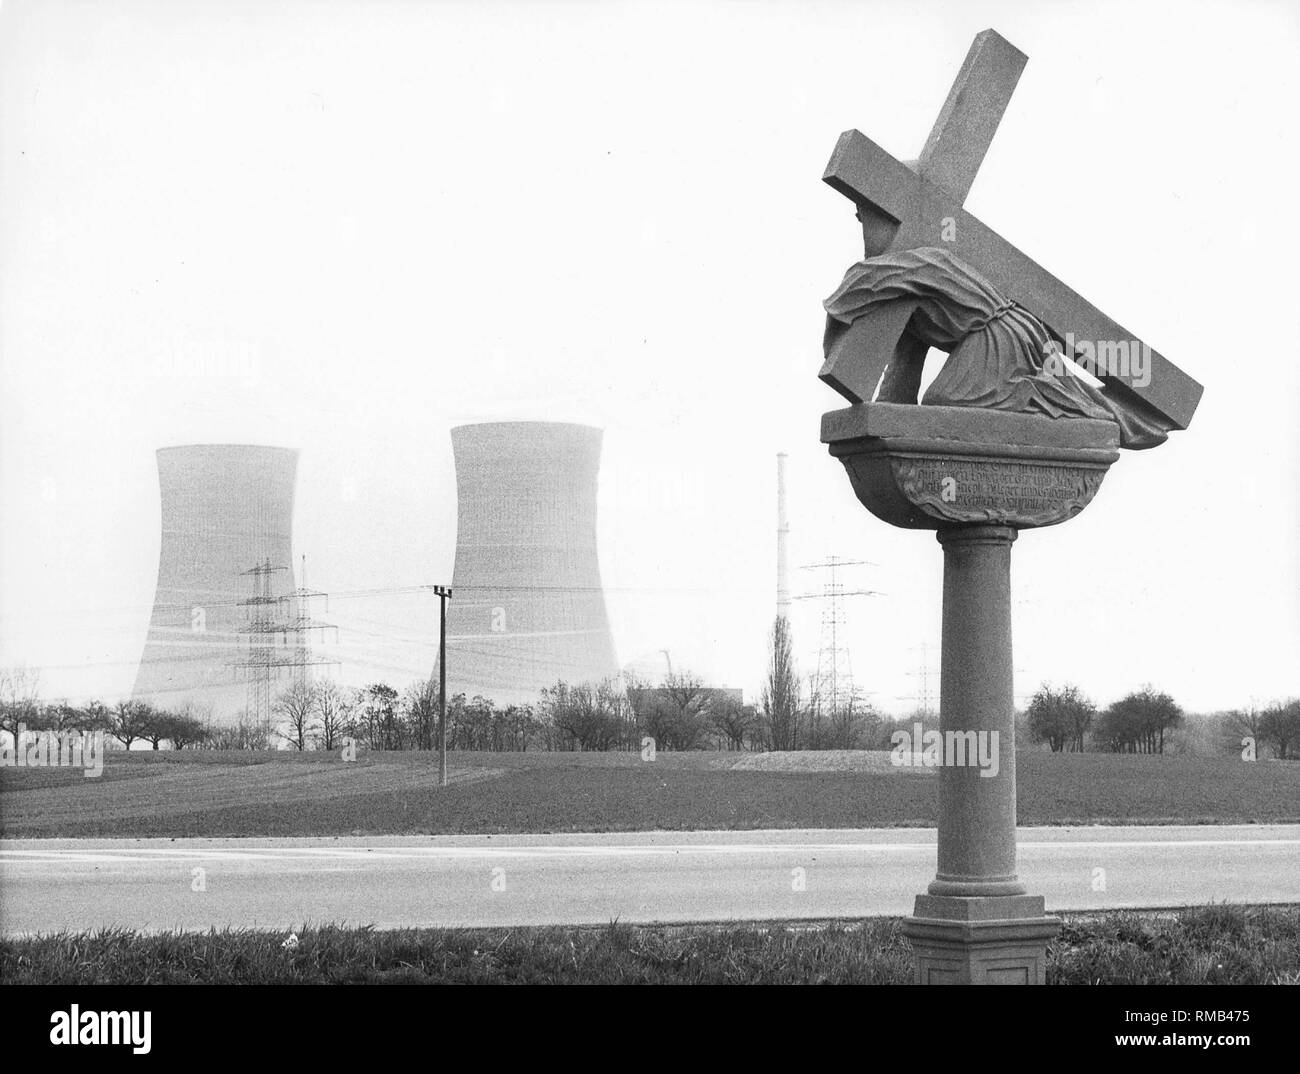 Planta De Energía Nuclear En El Fondo Blanco. Fotos, retratos, imágenes y  fotografía de archivo libres de derecho. Image 62505915